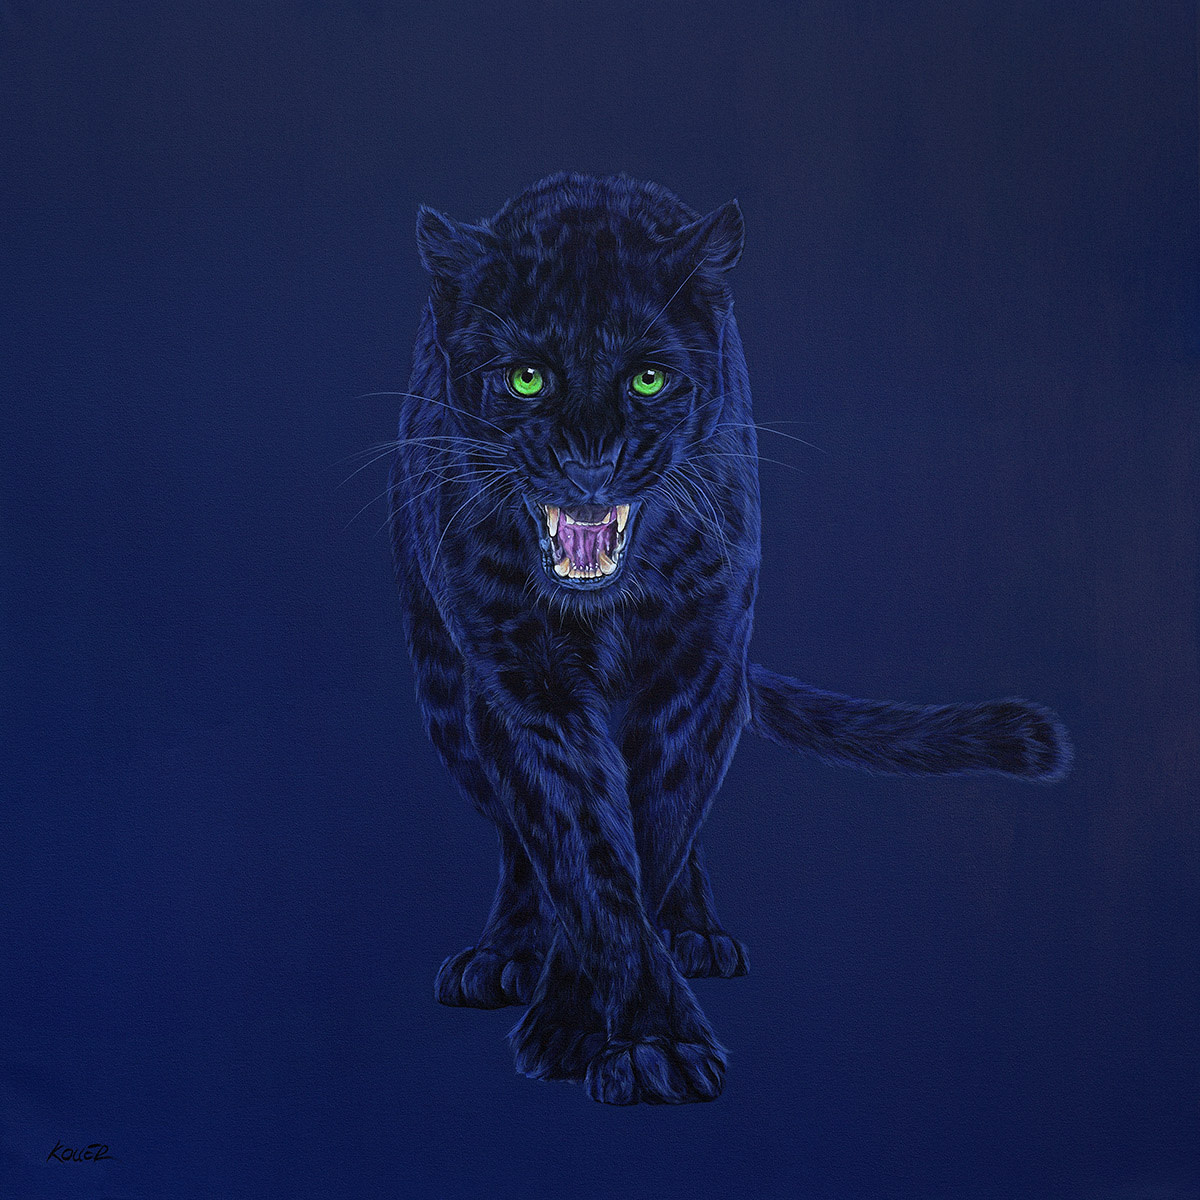 BLACK LEOPARD ON DARK BLUE, 2015 by HELMUT KOLLER